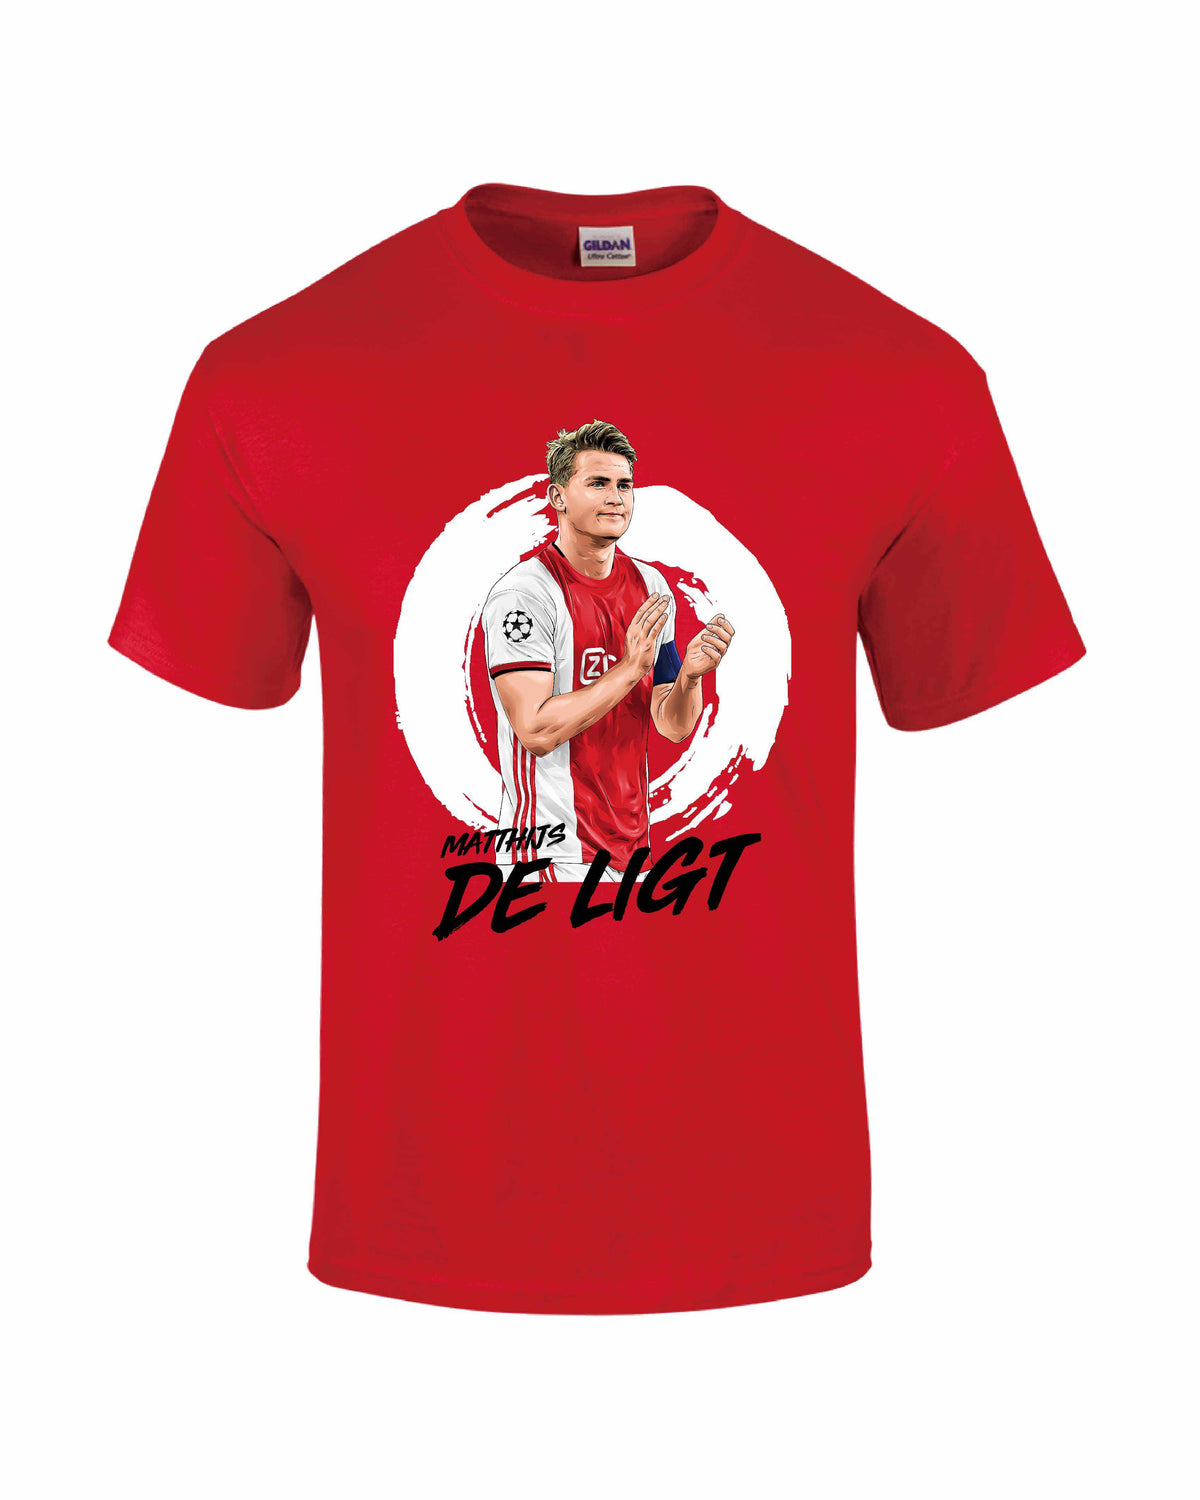 DE LIGT T-Shirt - Mens